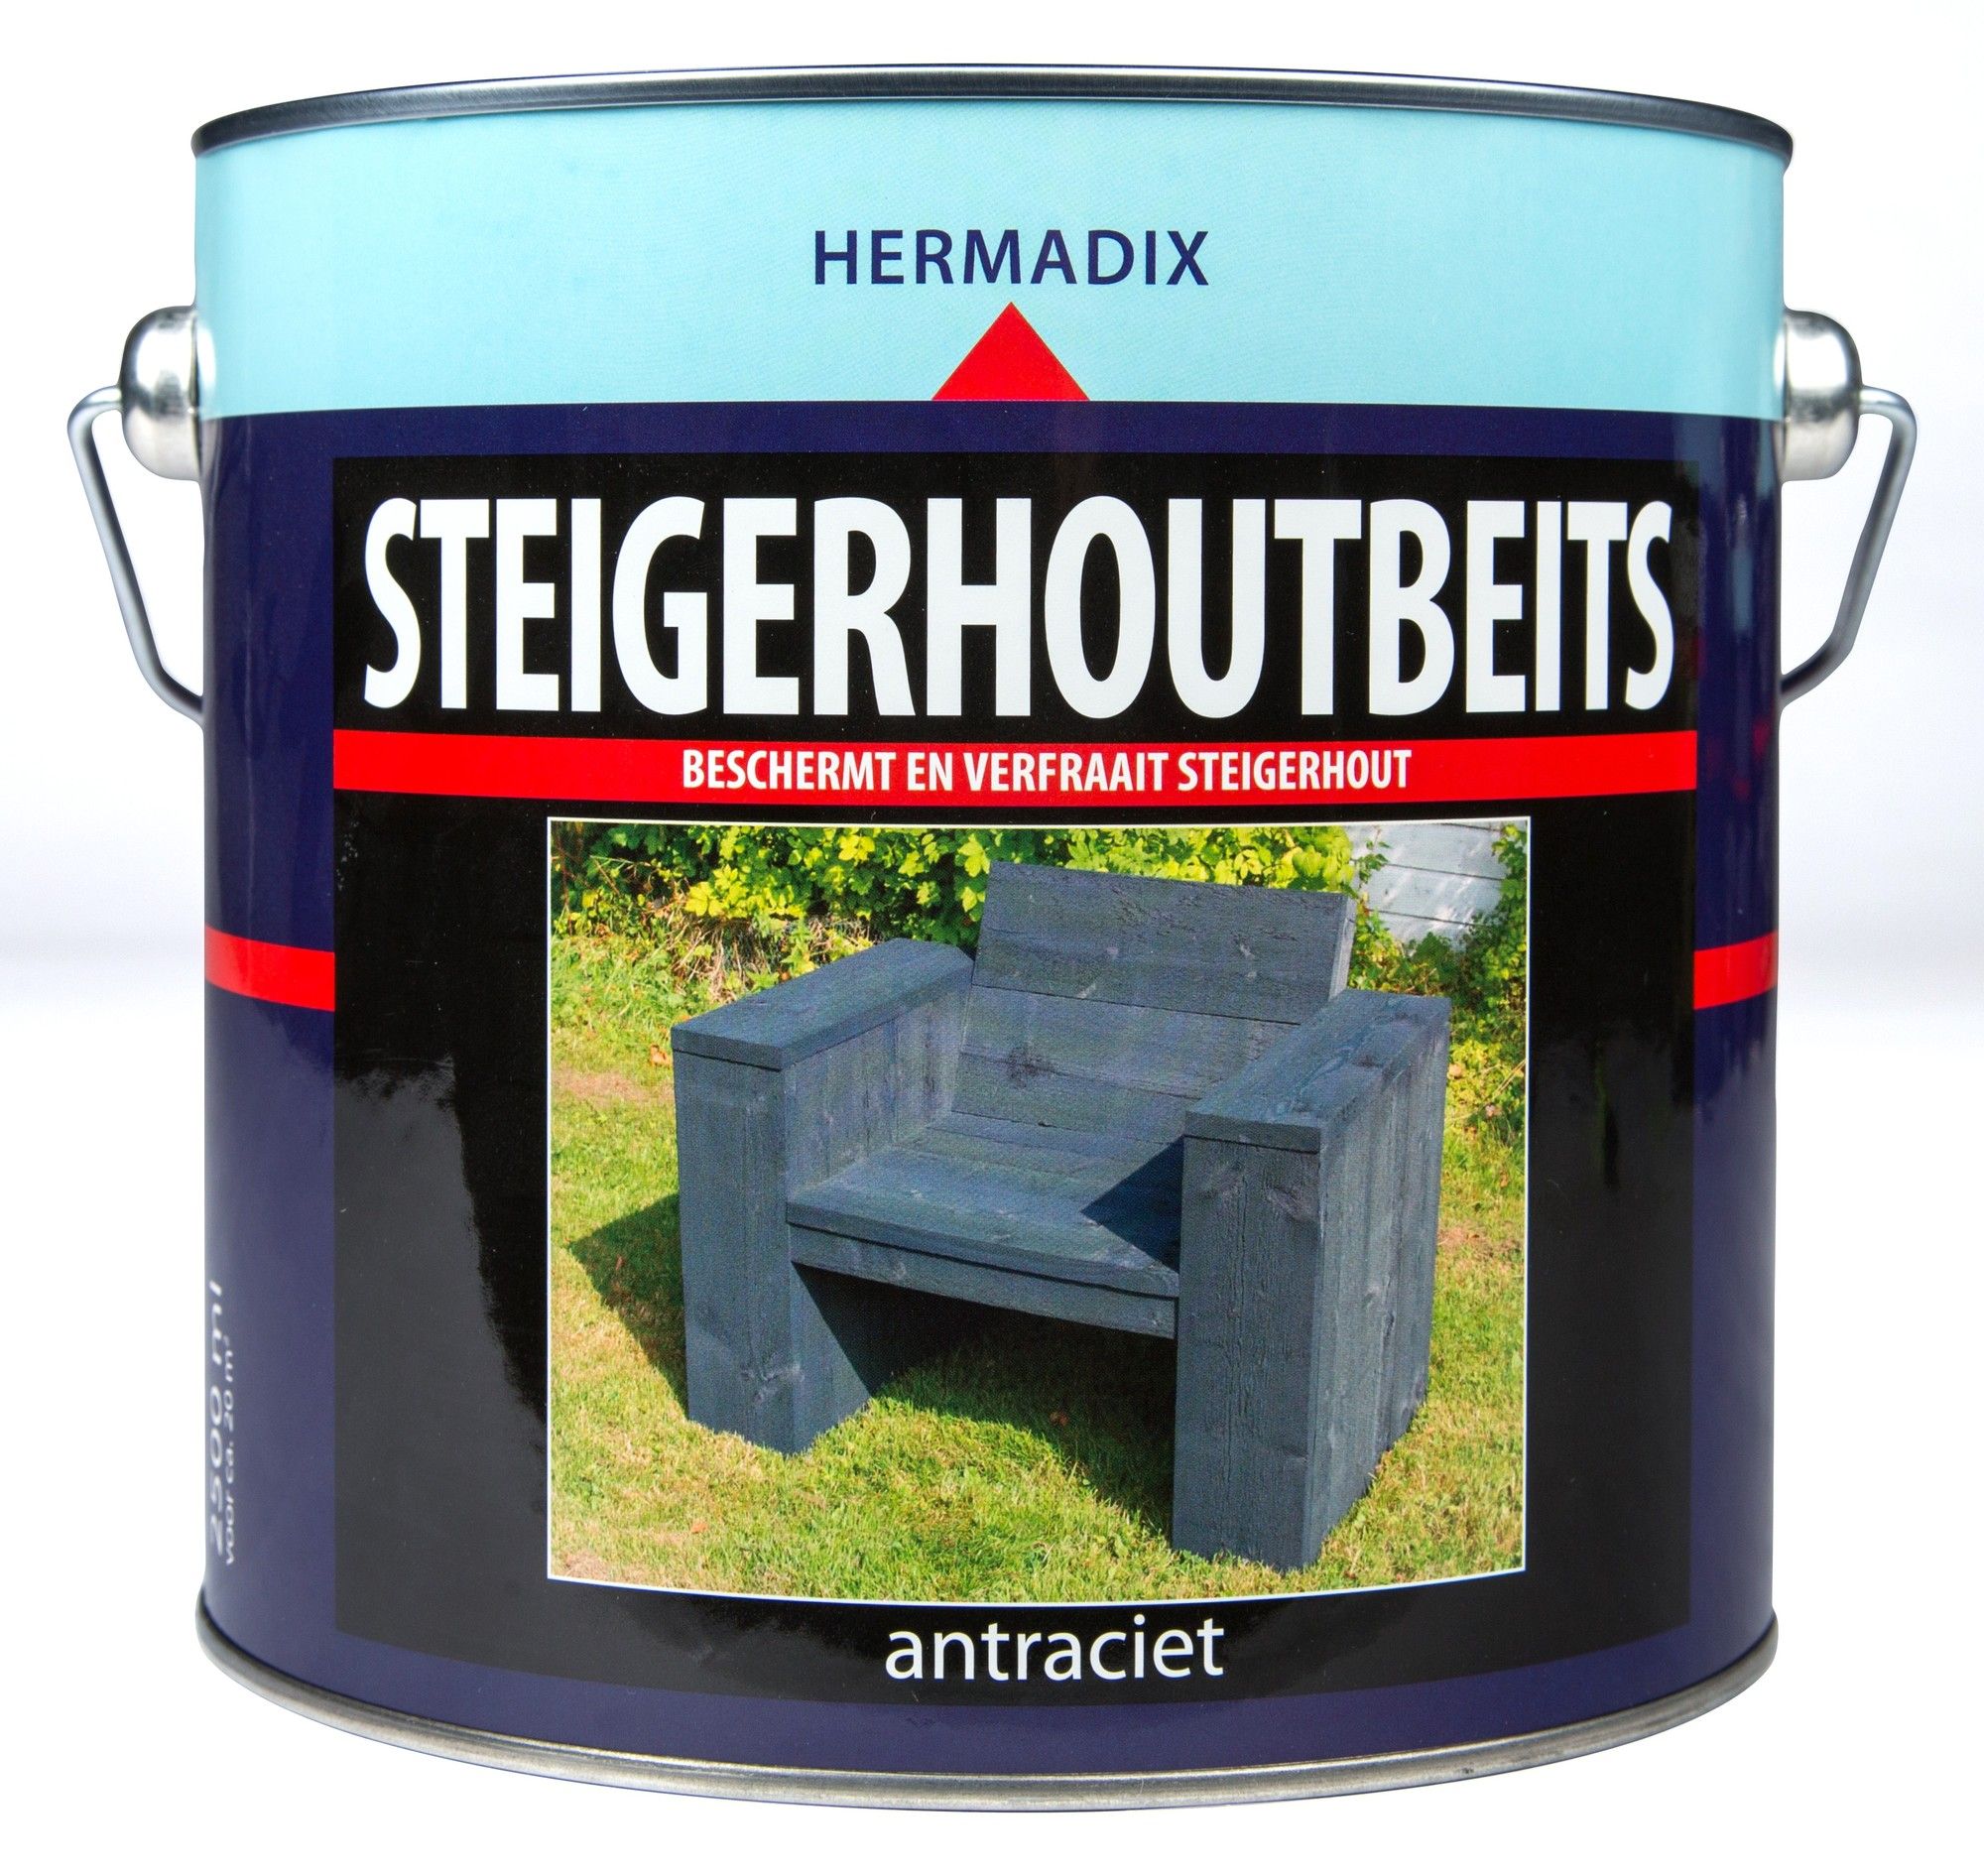 Lezen Meditatief de jouwe Hermadix steigerhoutbeits antraciet - 2,5 liter | Bullstore.nl